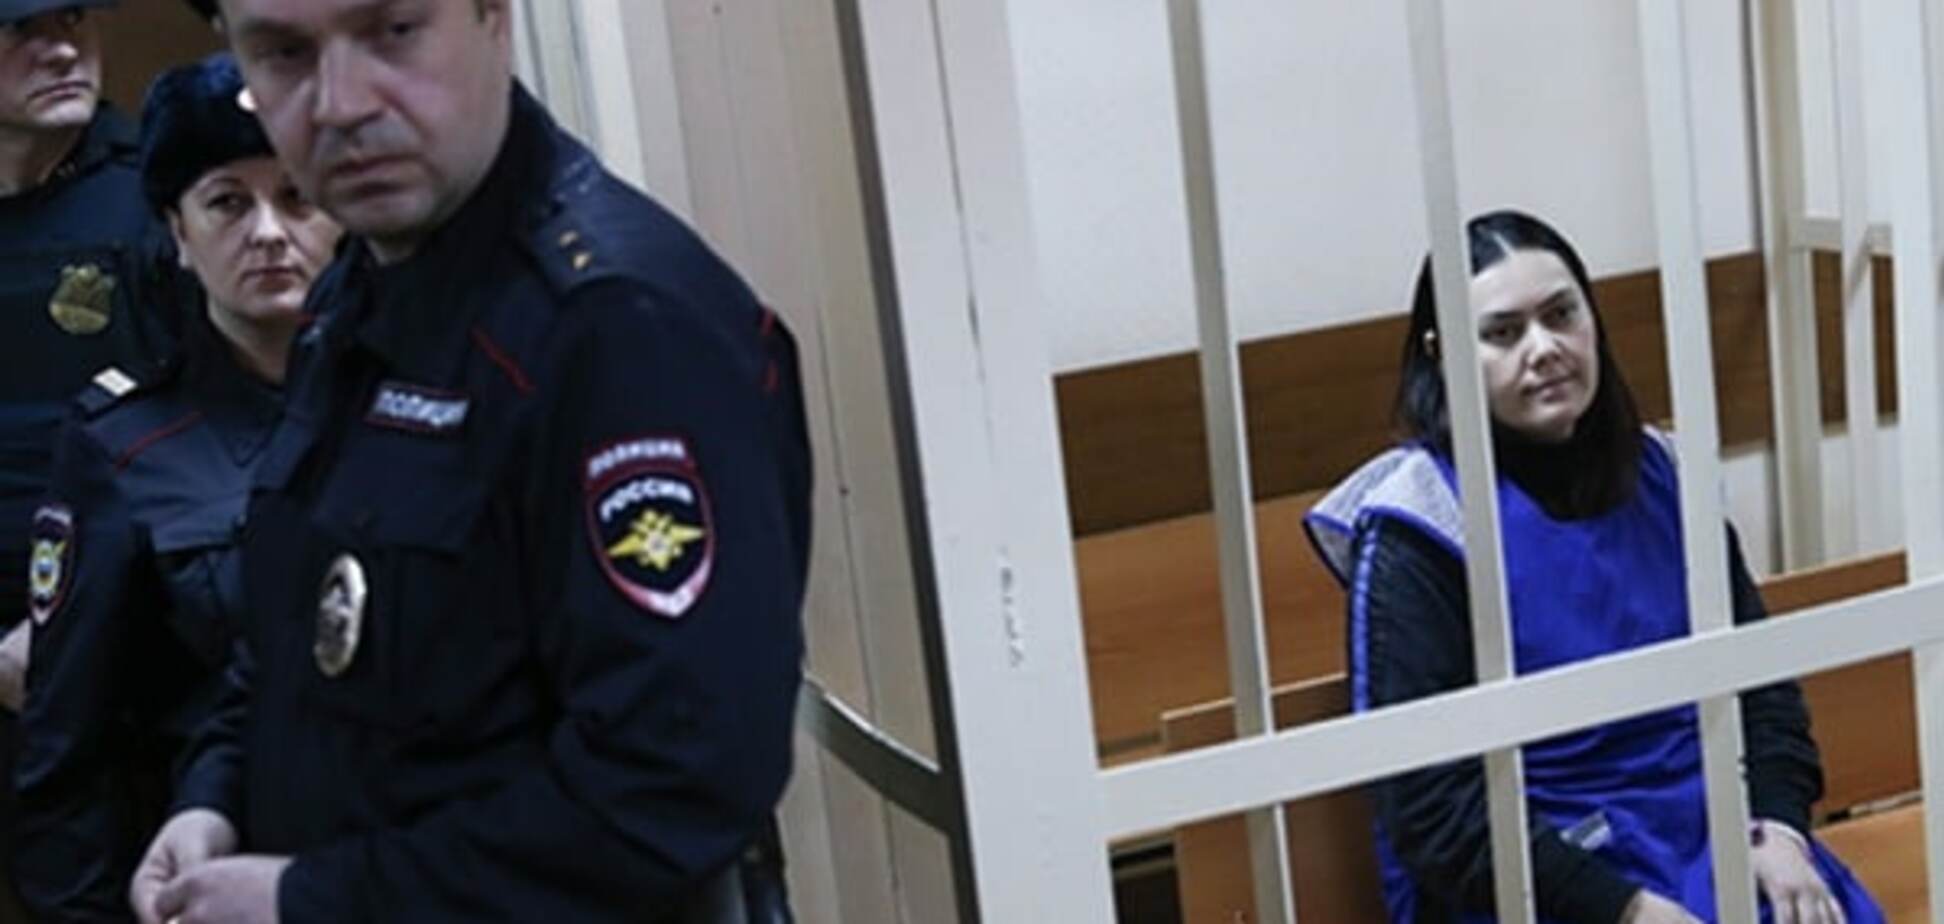 Кривава драма в Москві: в суді розповіли про 'підбурювачів' няні-ката